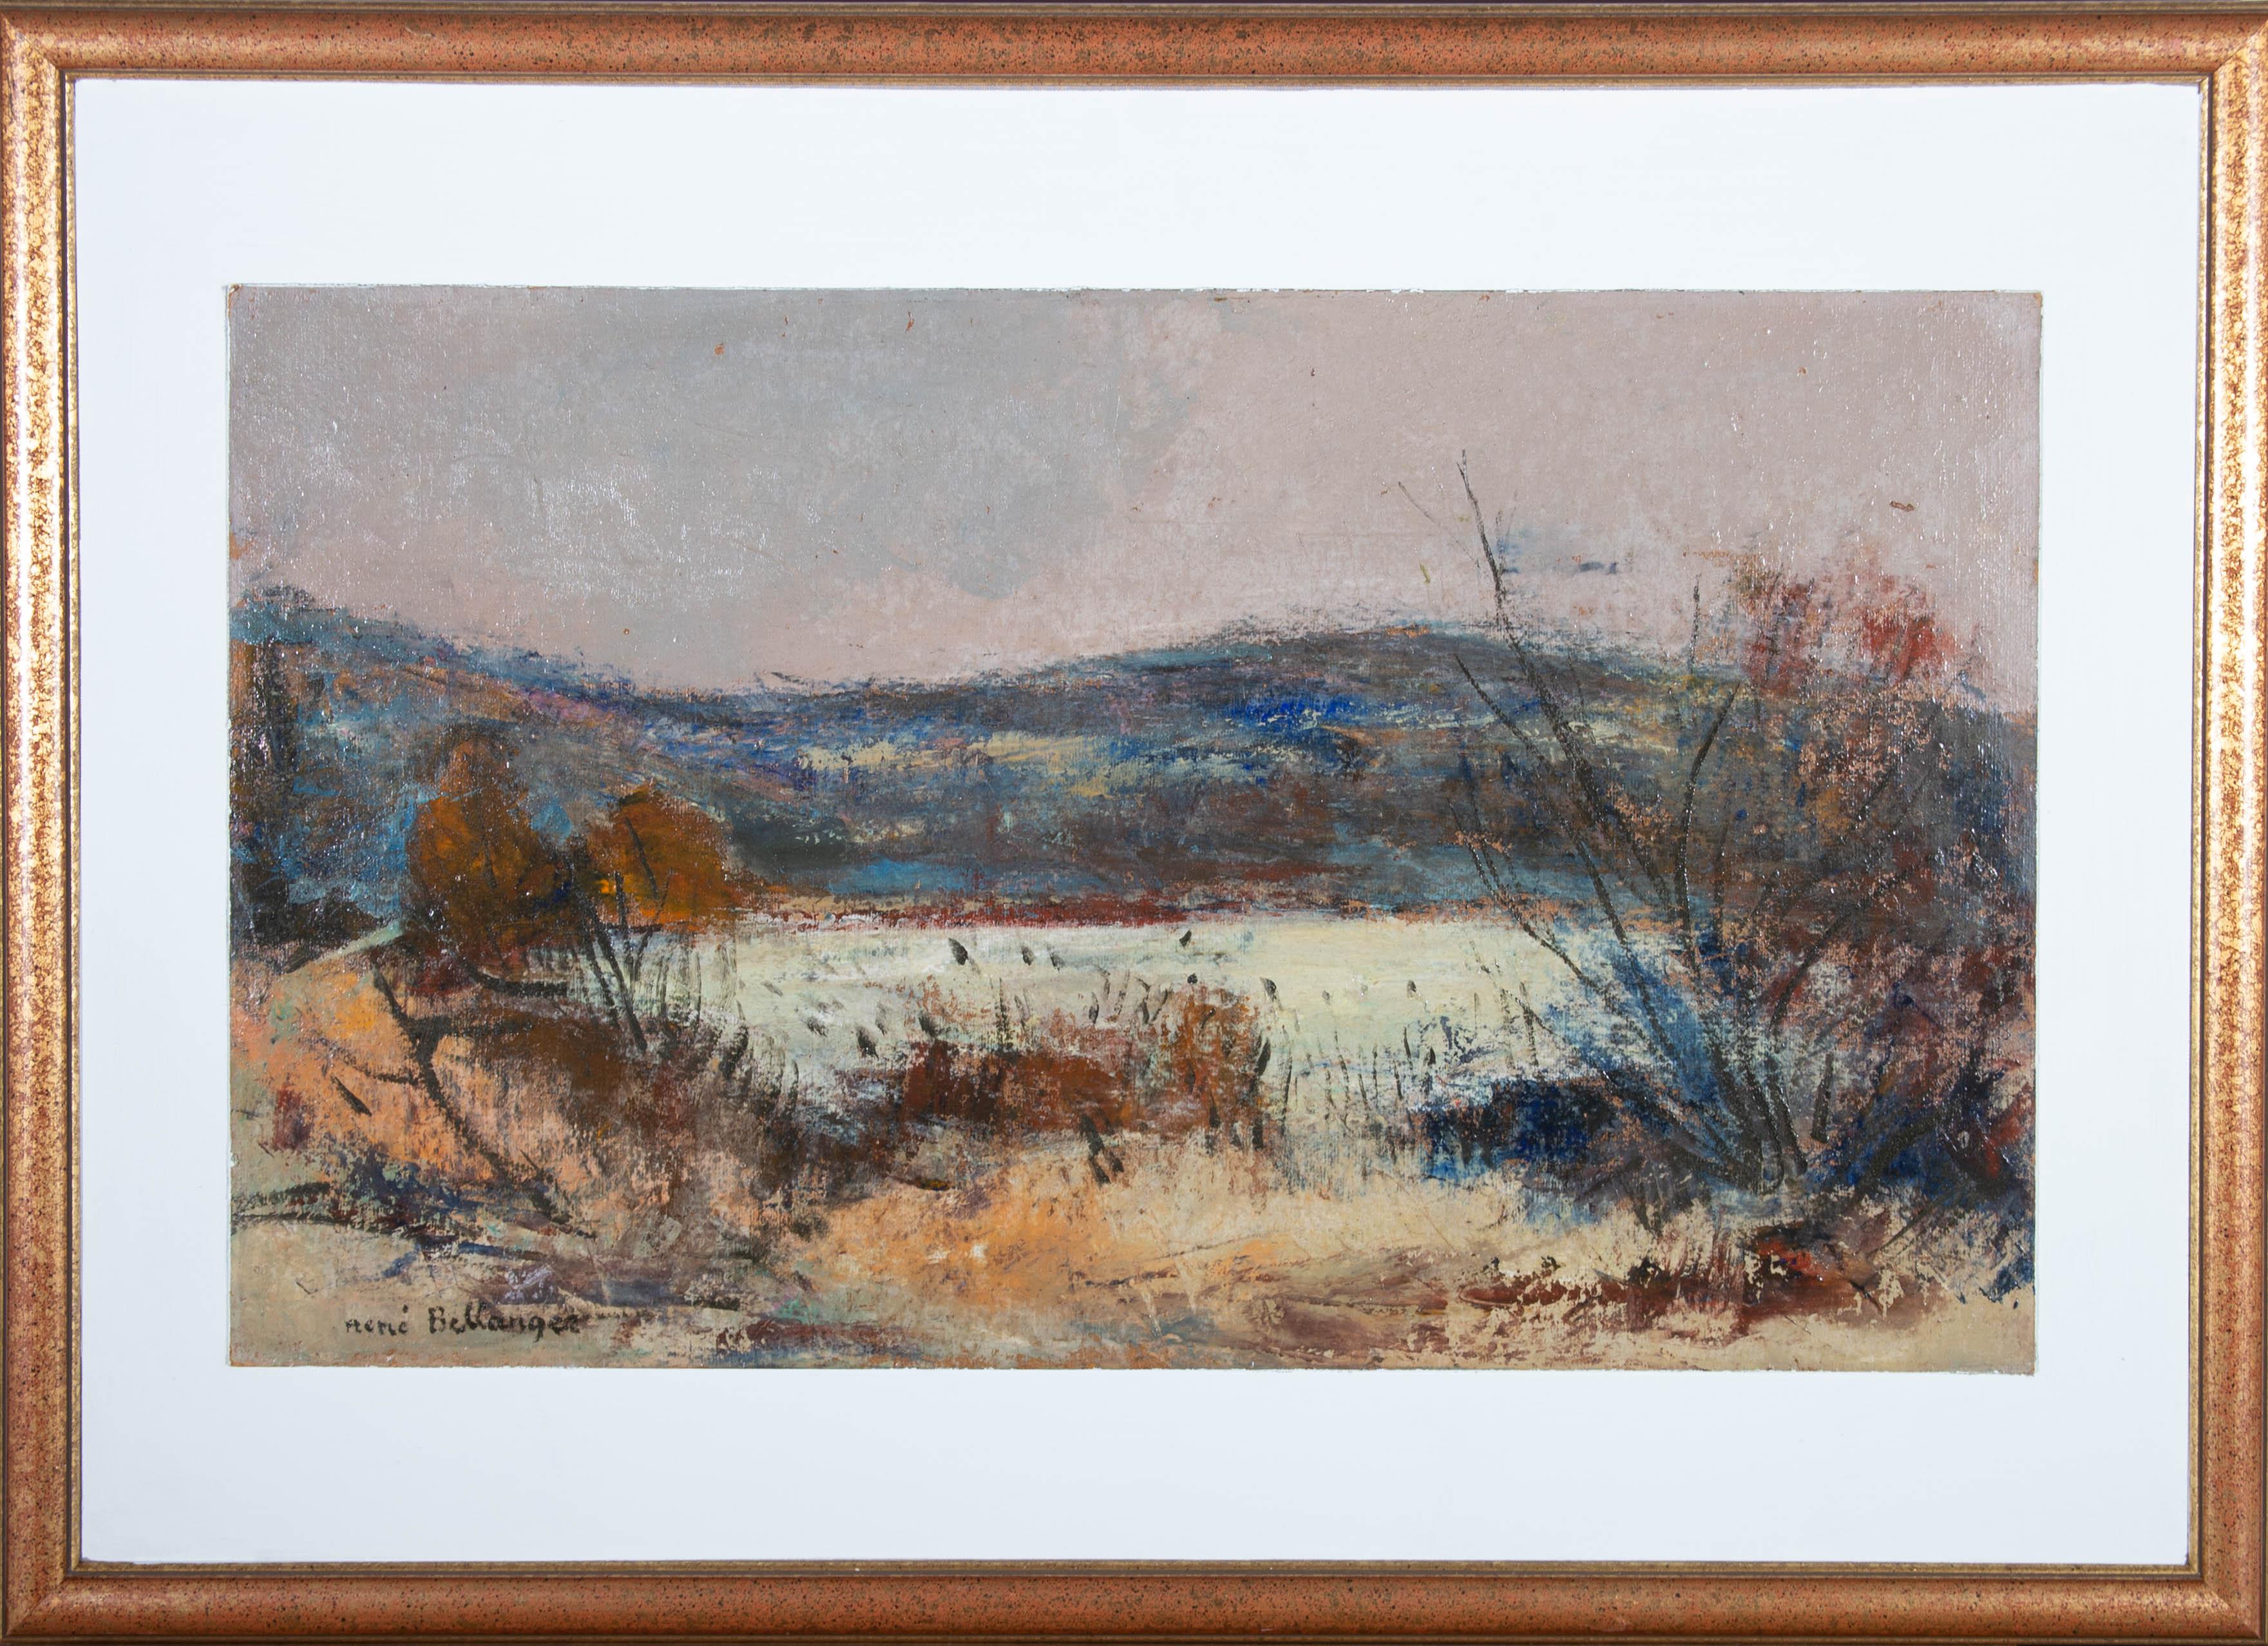 Une peinture à l'huile accomplie par l'artiste Rene Charles Bellanger, représentant un paysage rural. Avec des influences évidentes du mouvement post-impressionniste, l'artiste a réalisé une composition harmonieuse et bien équilibrée. Signé et daté